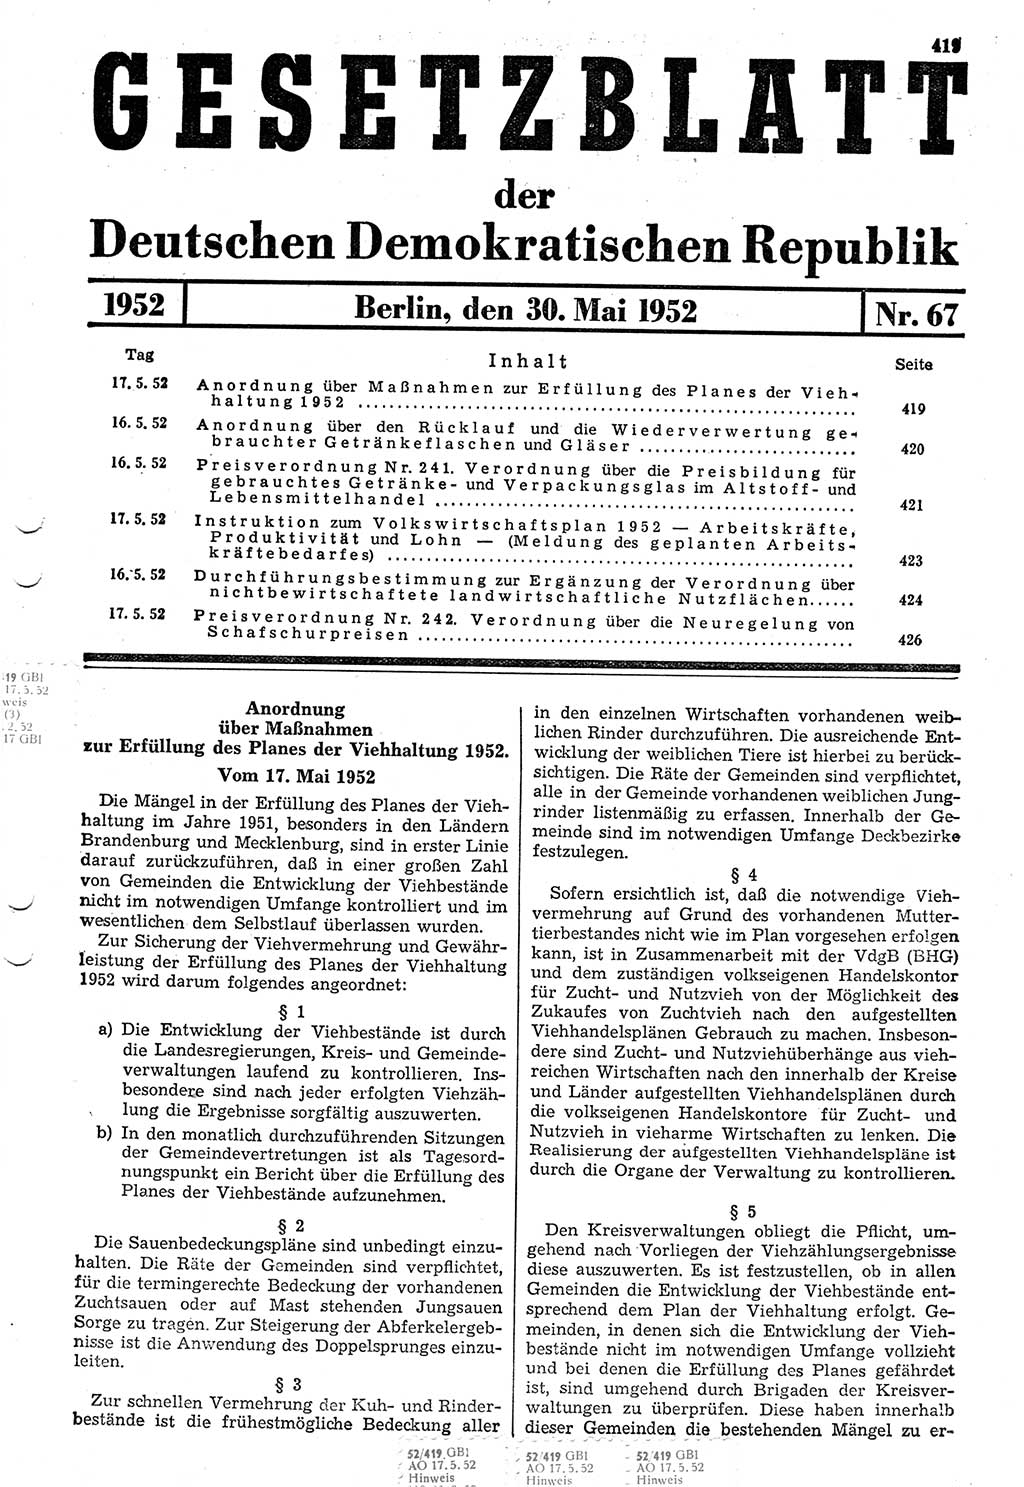 Gesetzblatt (GBl.) der Deutschen Demokratischen Republik (DDR) 1952, Seite 419 (GBl. DDR 1952, S. 419)